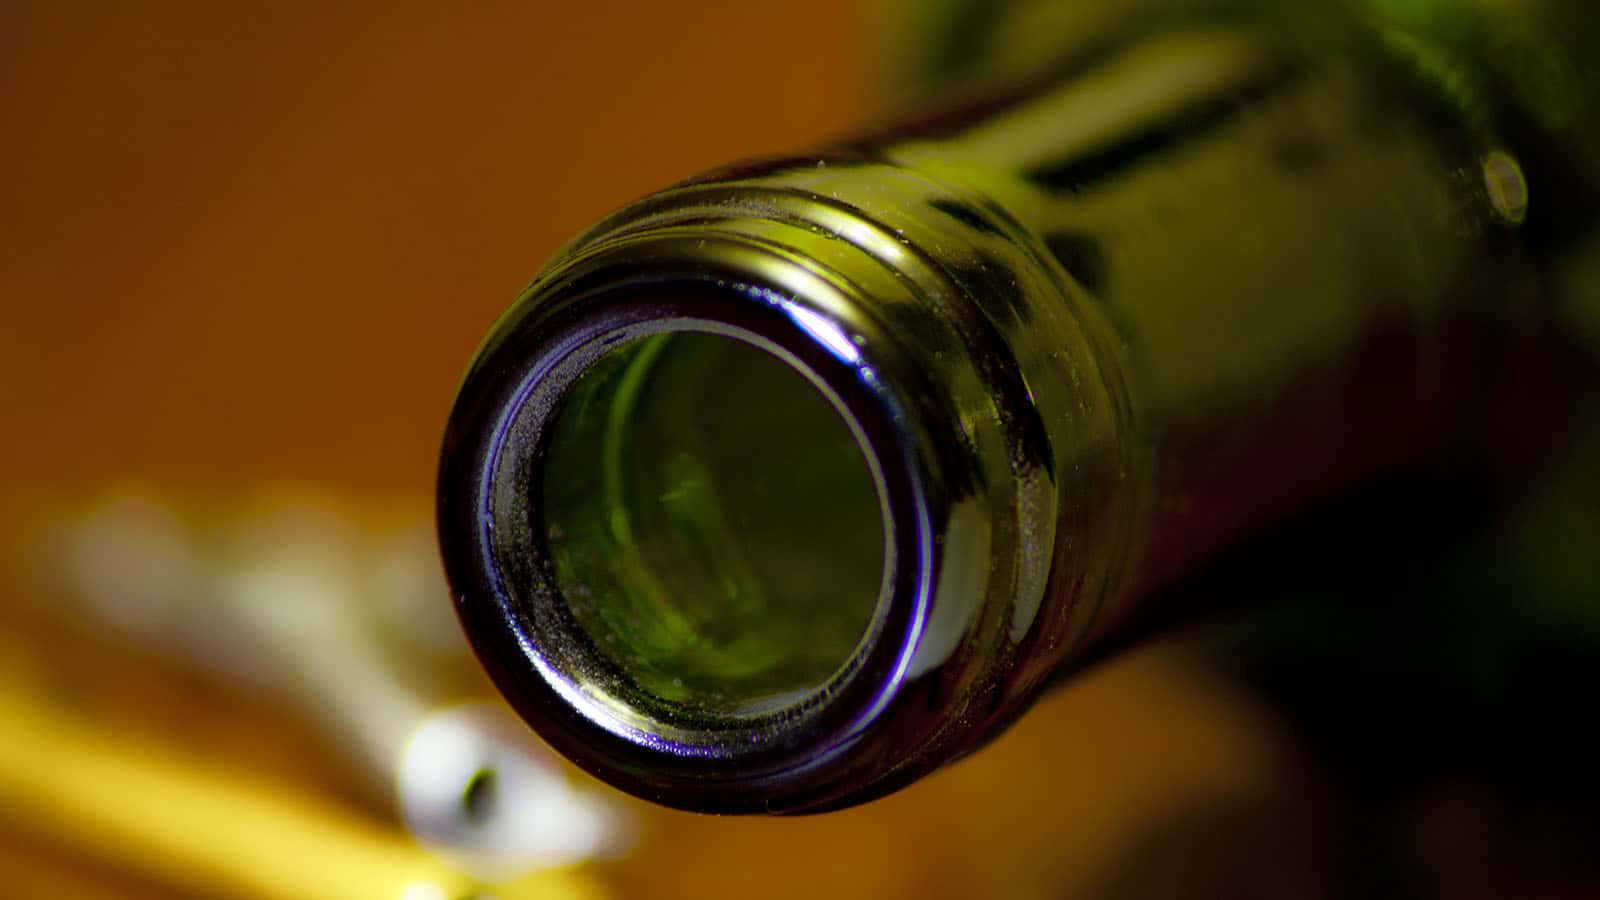 Comment conserver un vin après ouverture ? 